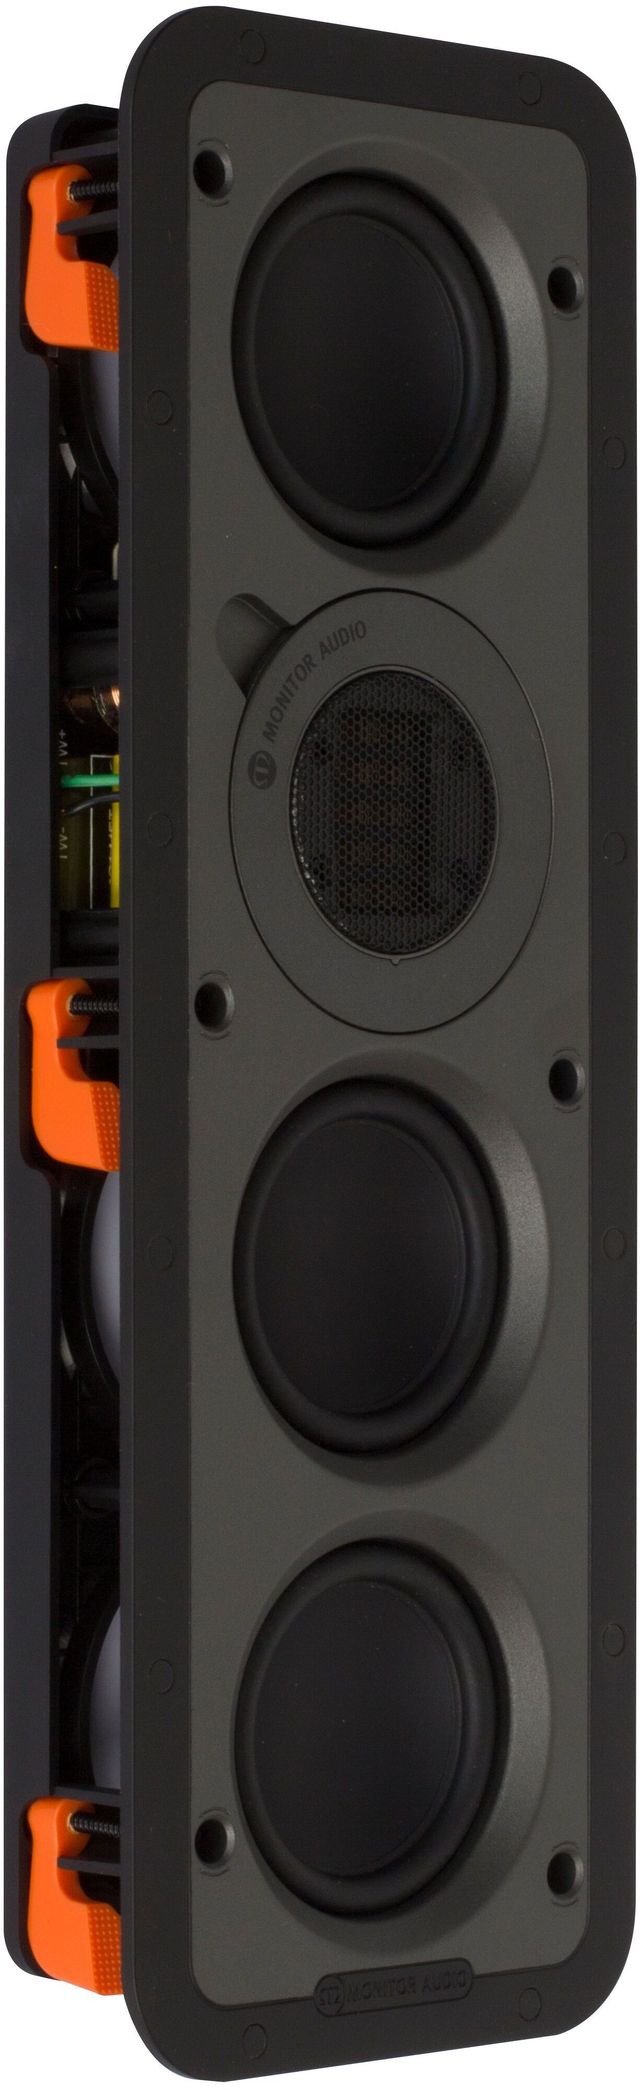 Monitor Audio WSS430 In-Wall Speaker 2